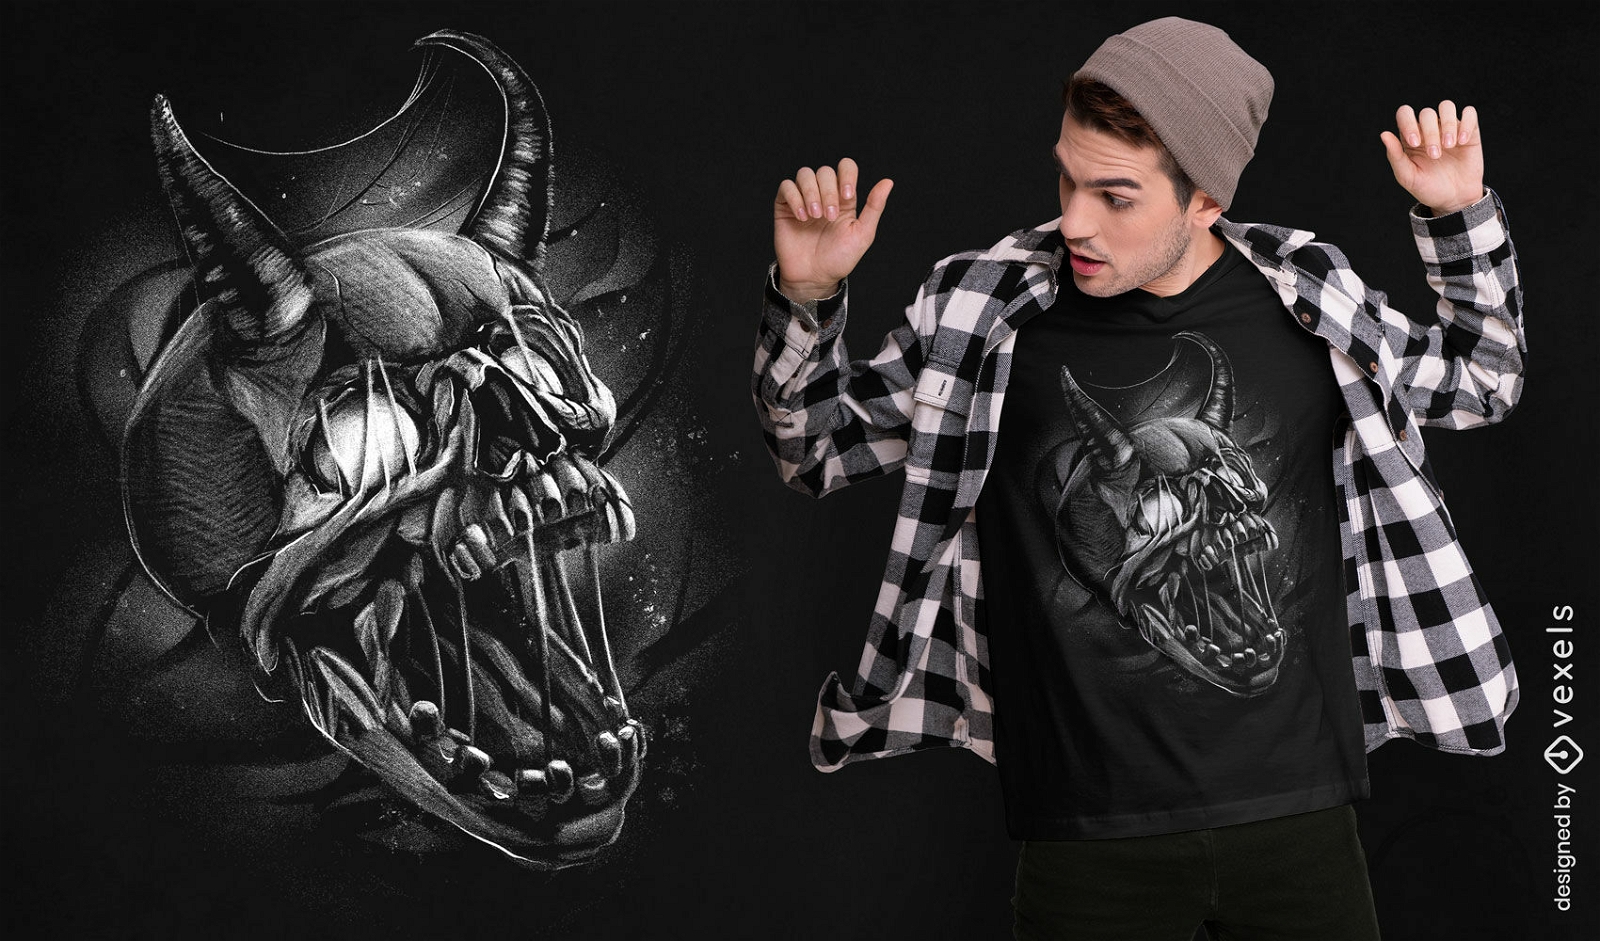 Demonic skull t-shirt design